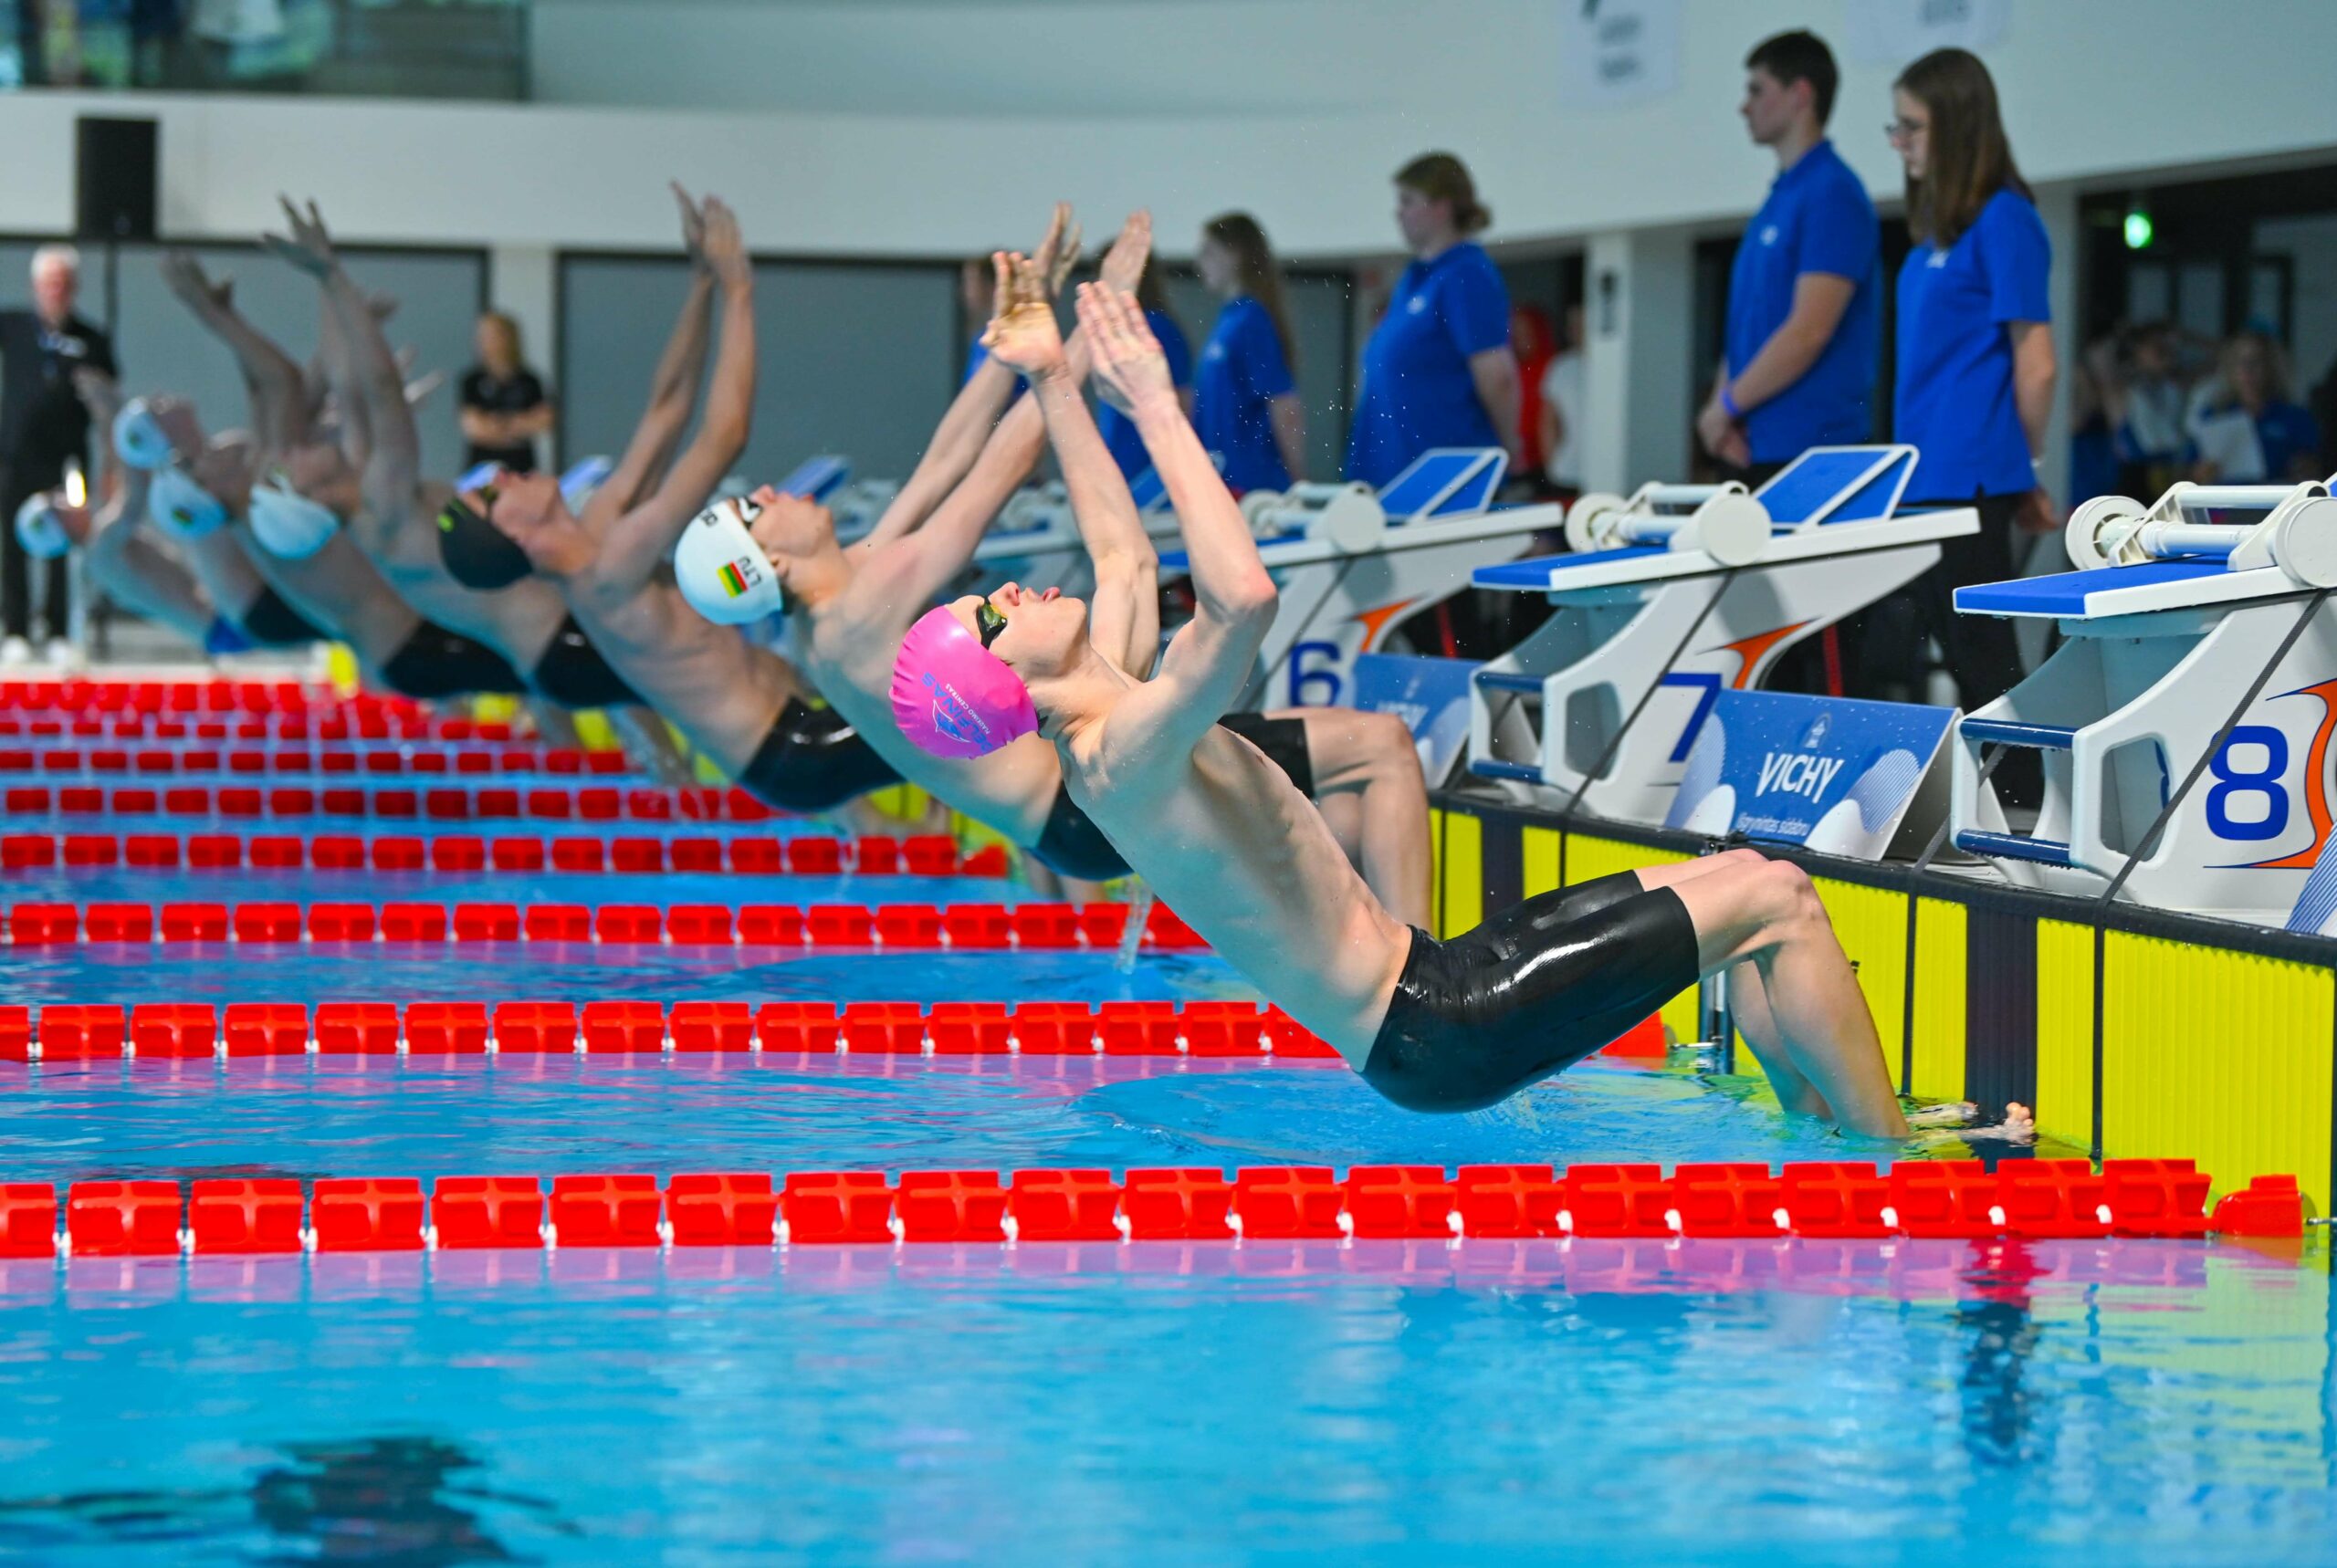 Istorinis įvykis: Pirmą kartą Lietuvoje – Europos jaunių plaukimo čempionatas – MadeinVilnius.lt